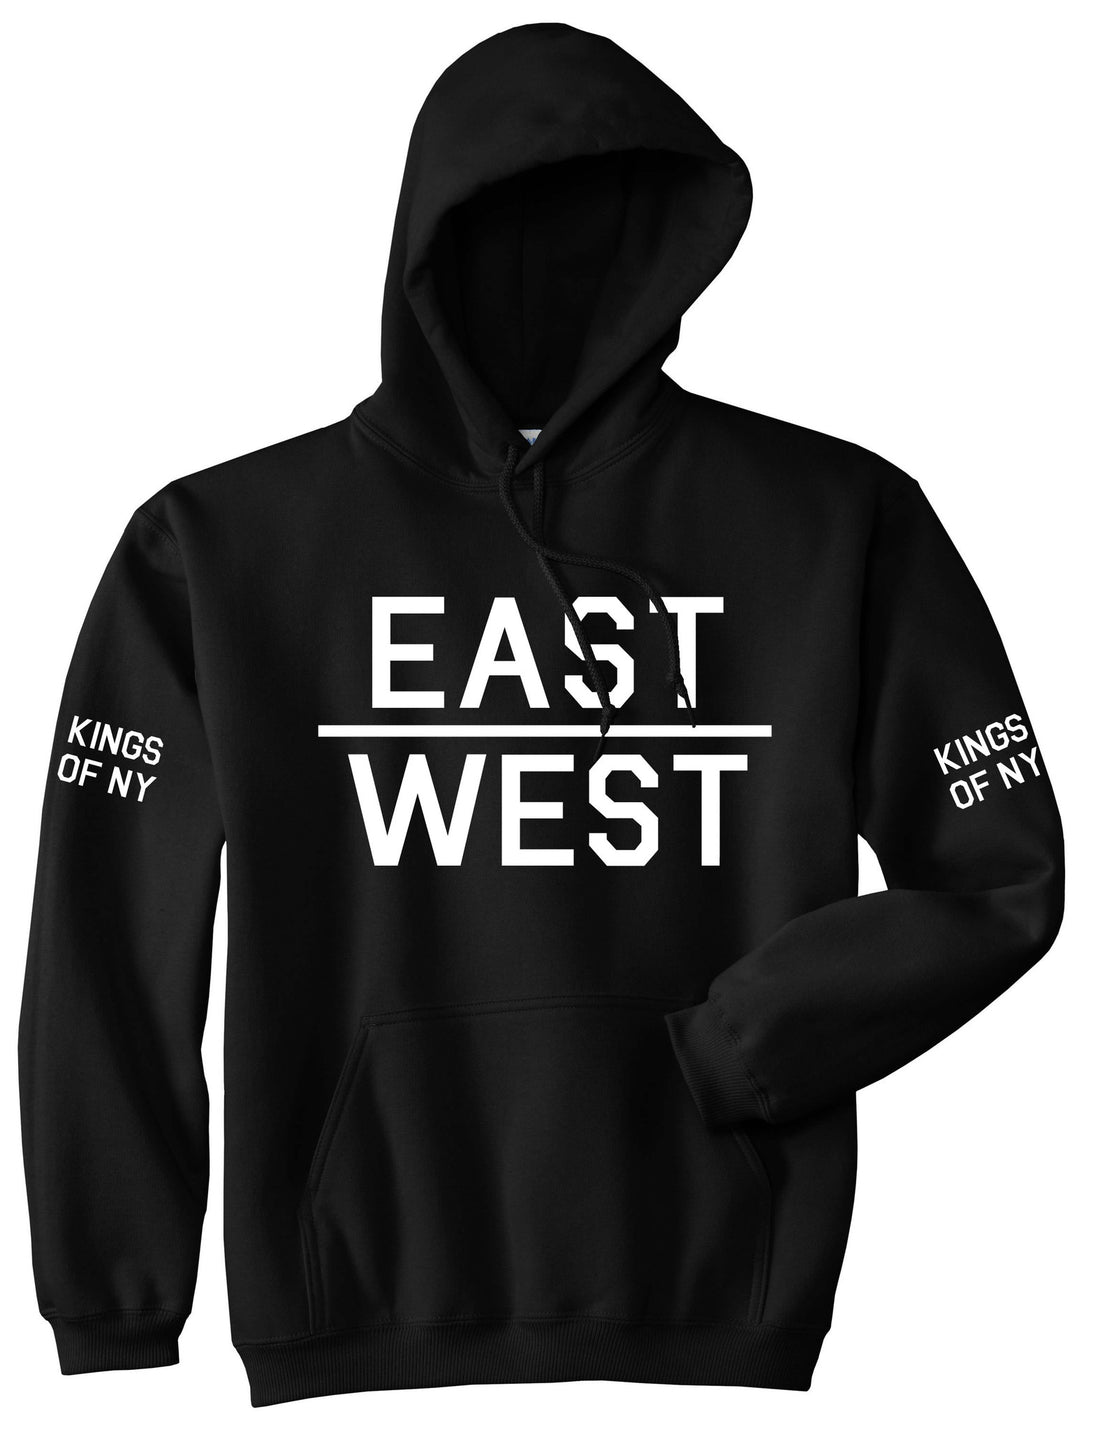 East West Pullover Hoodie Hoody in Black by Kings Of NY